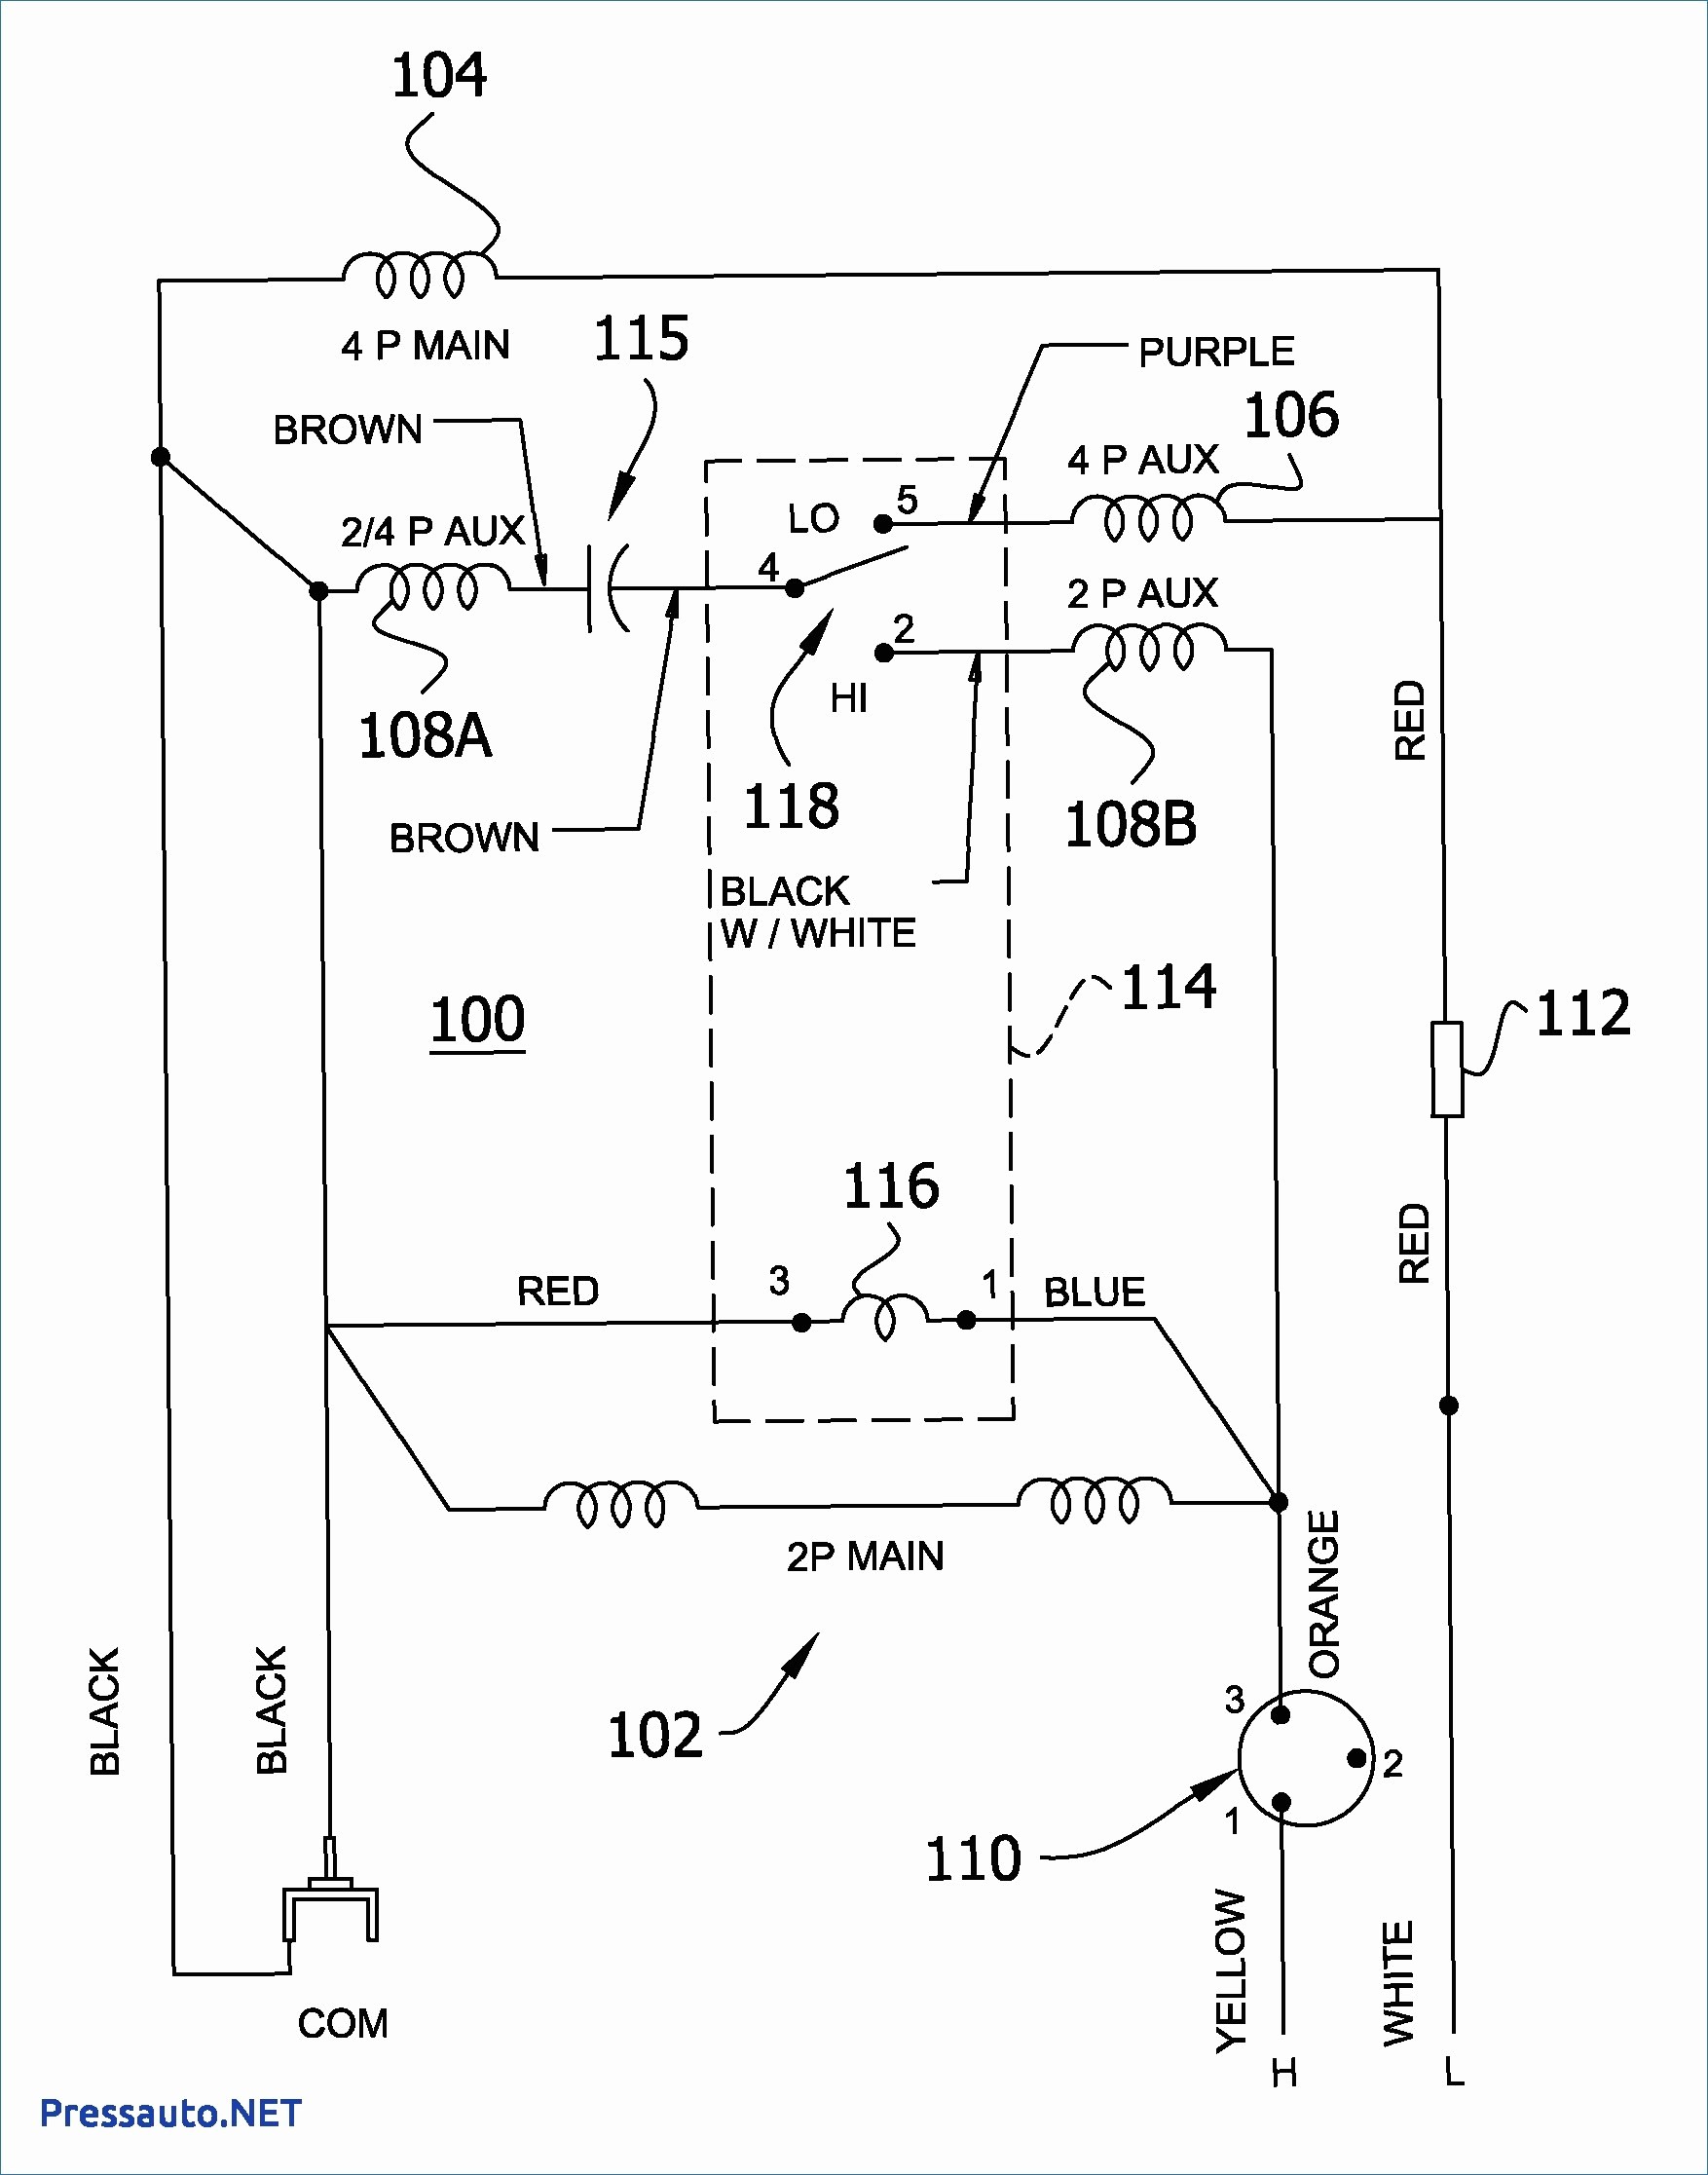 Capacitor Wiring Diagram Fresh Motor Starter Capacitor Wiring Diagram New Single Phase Capacitor